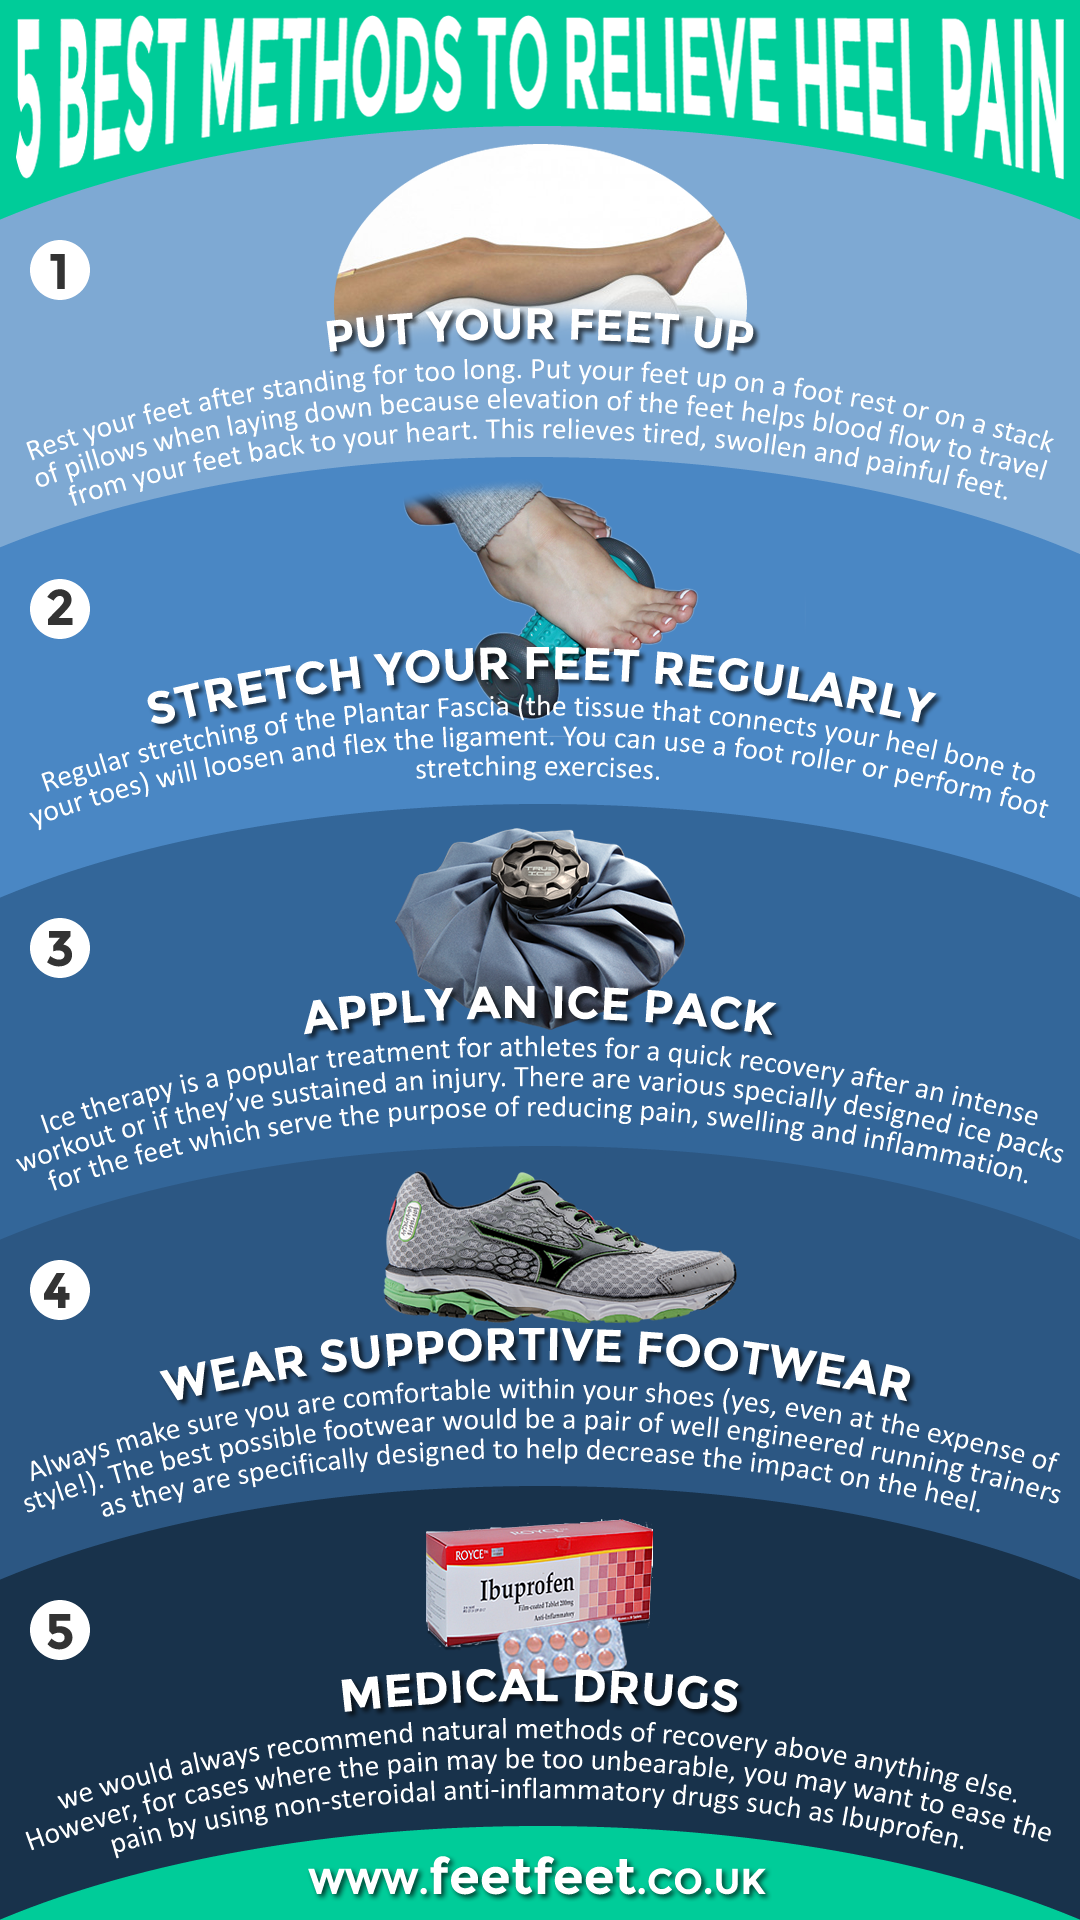 5 Best Methods to Relieve Heel Pain